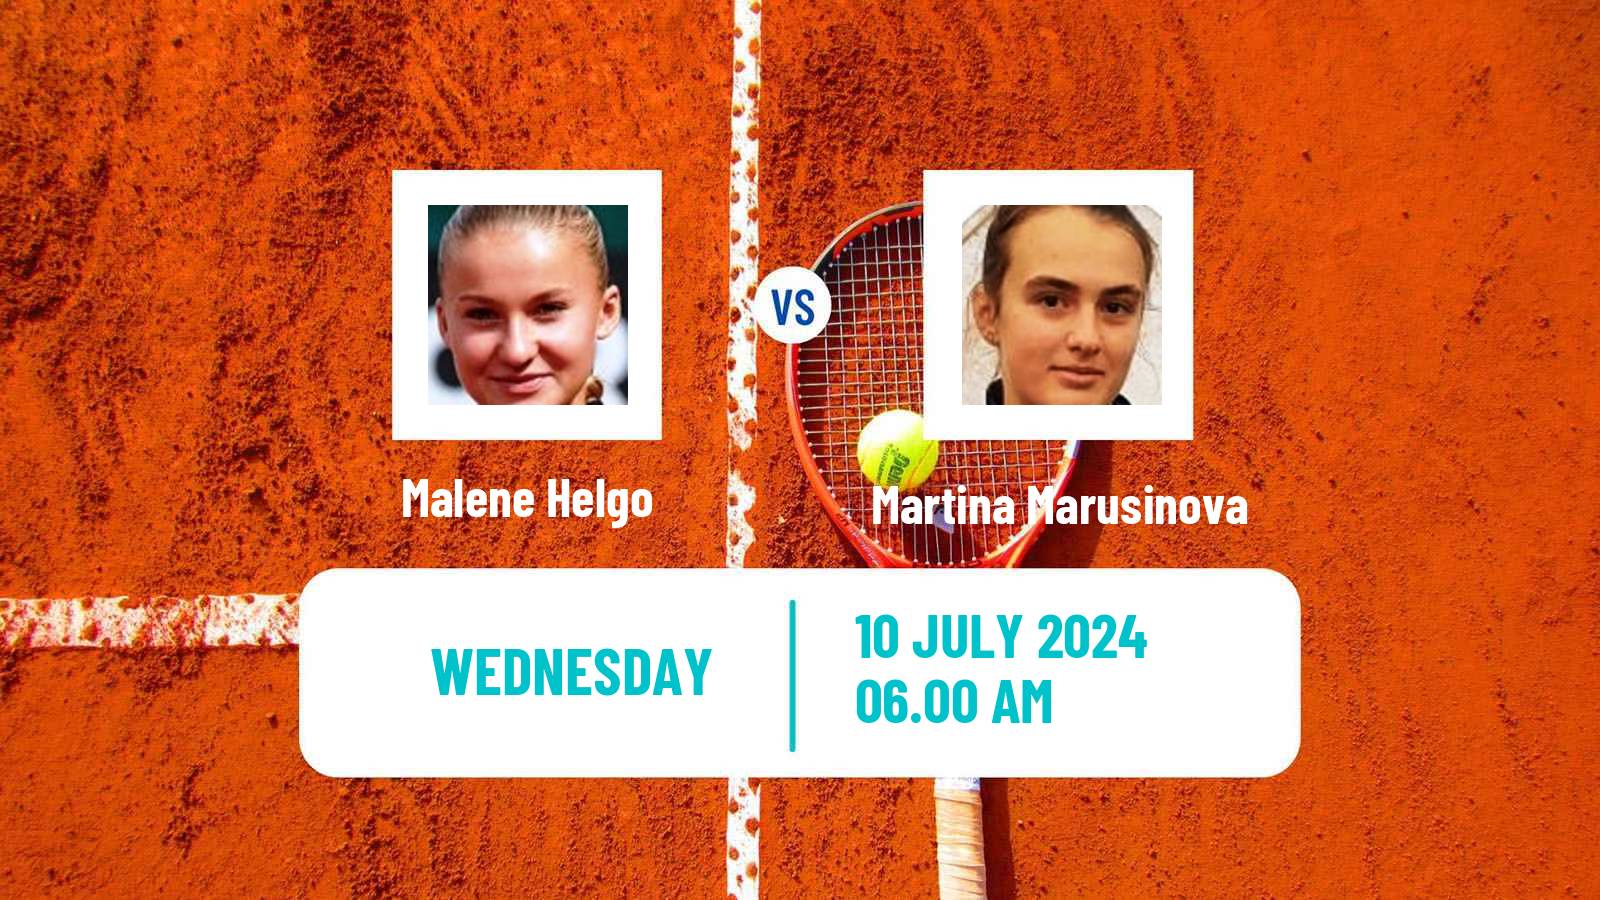 Tennis ITF W15 Grodzisk Mazowiecki Women Malene Helgo - Martina Marusinova